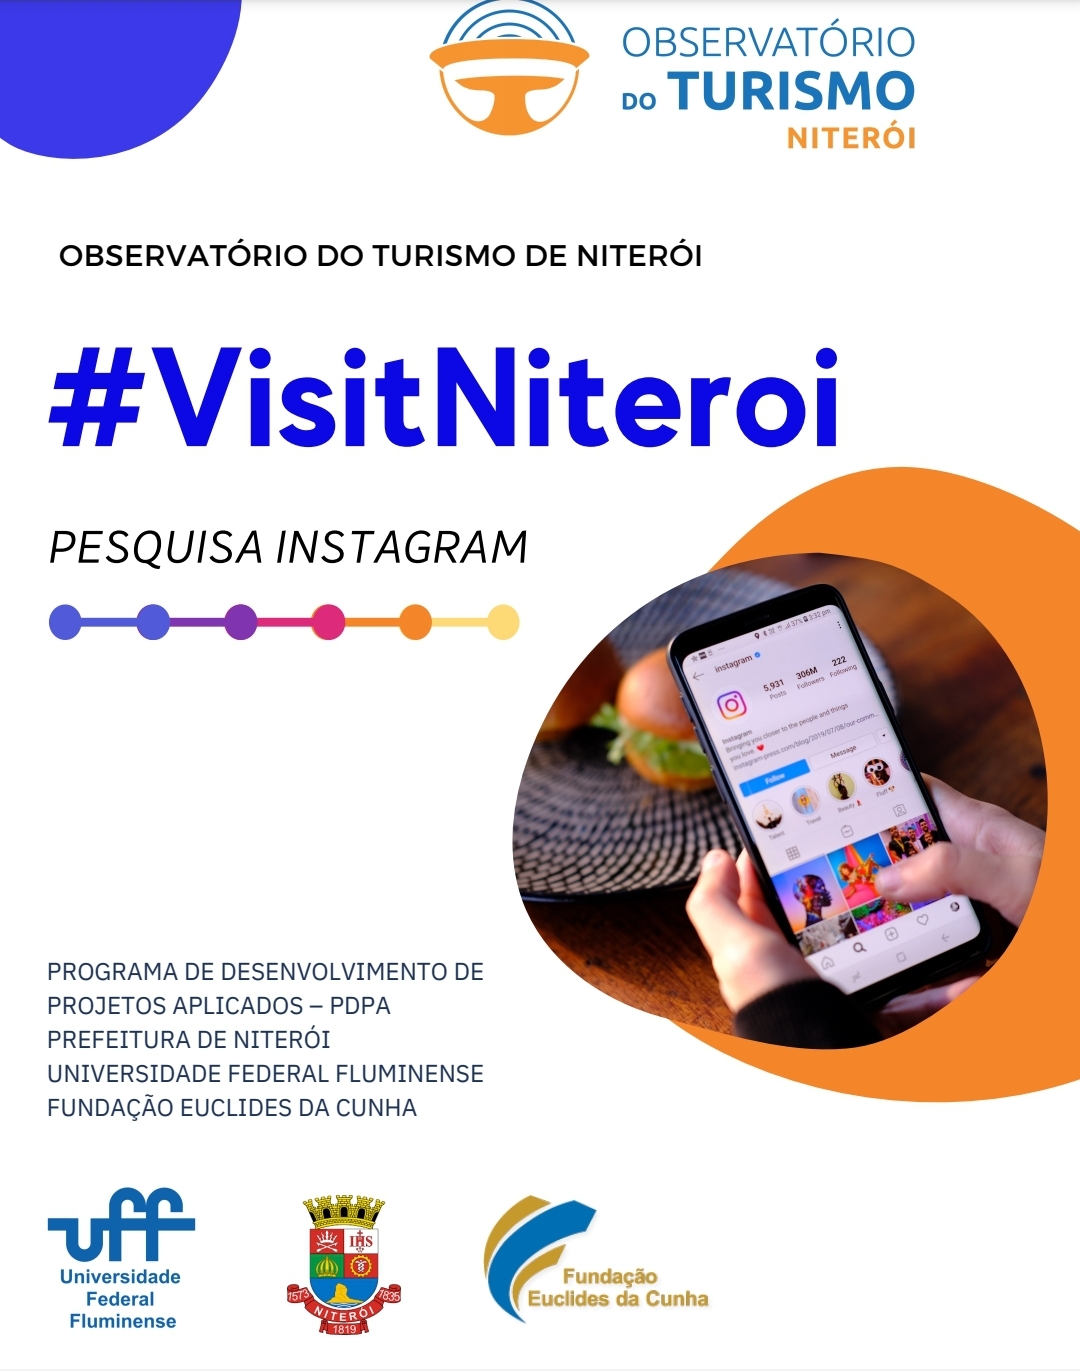 #VisitNiteroi: Pesquisa Instagram